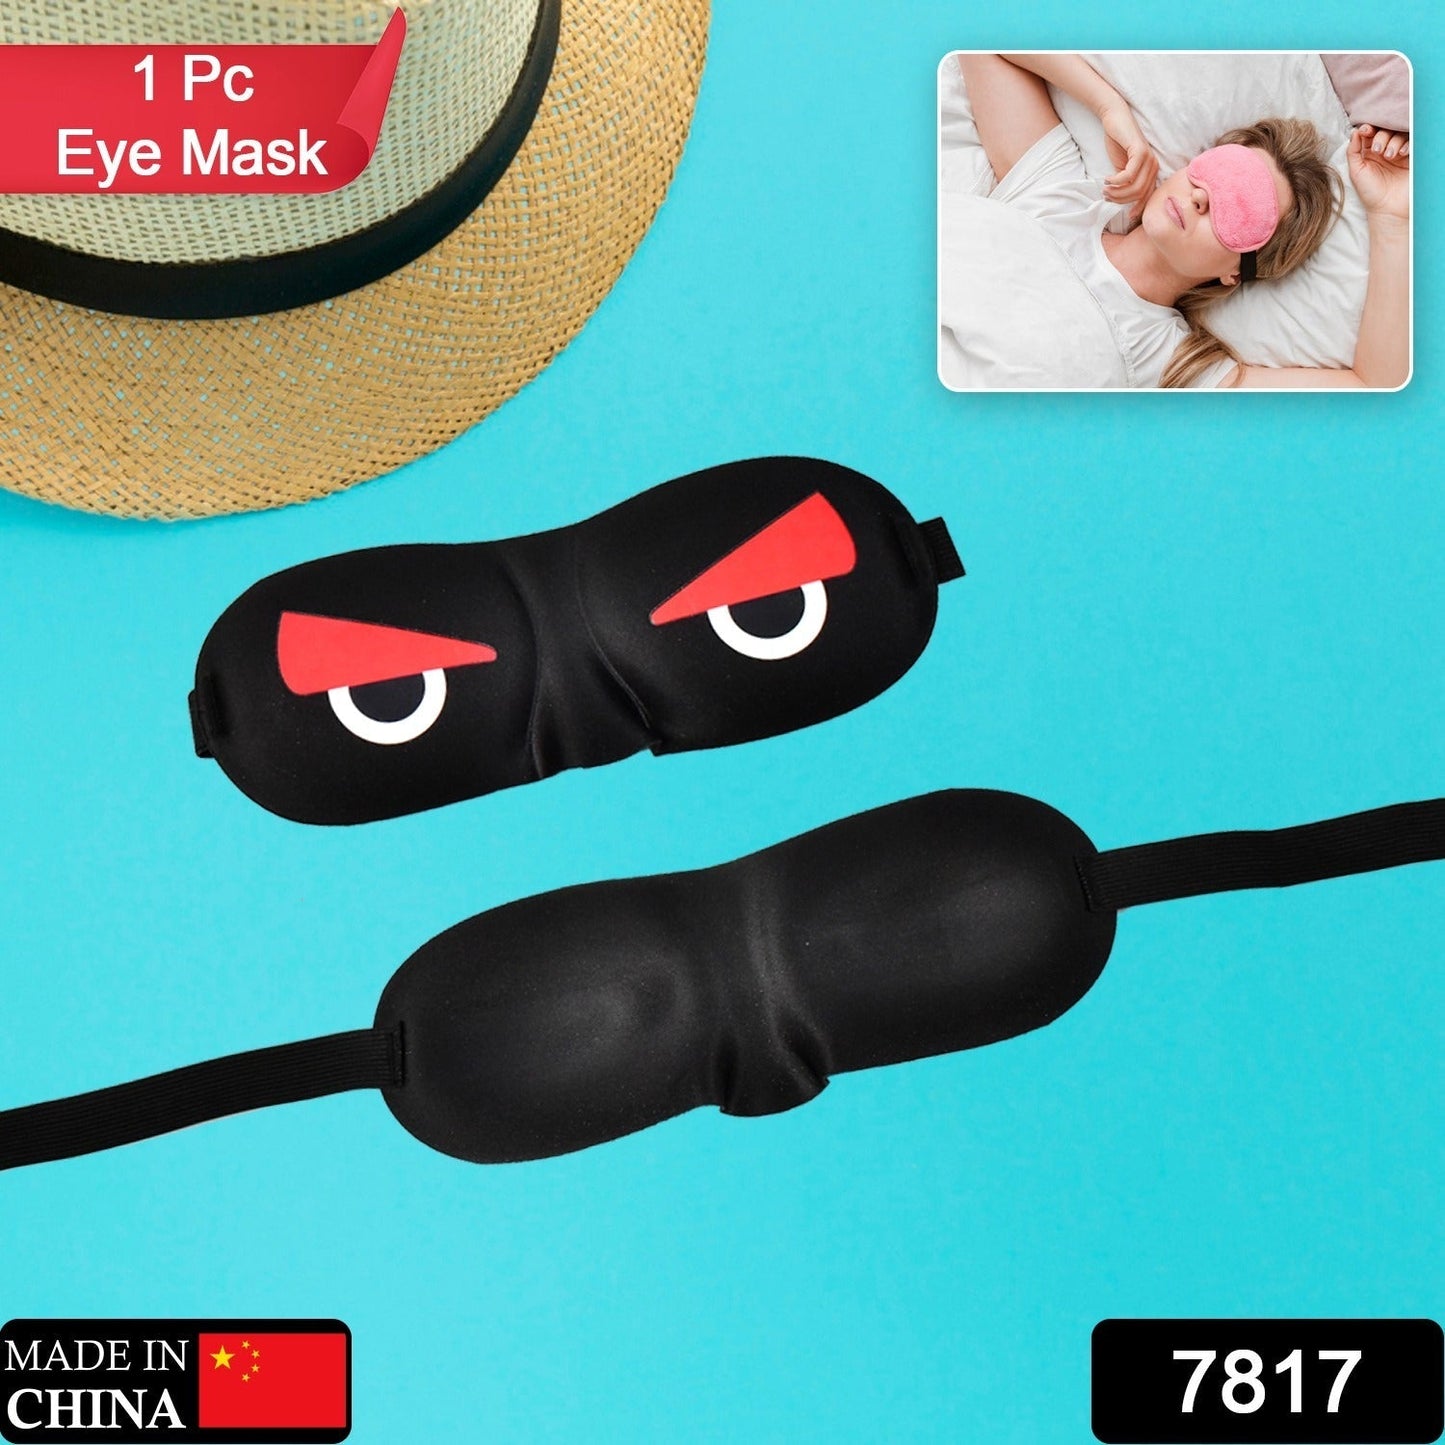 7817  Blind Sleeping Eye Mask Slip Night Sleep Eye black 3D Cotton Cover Super Soft & Smooth Travel Masks for Men Women Girls Boys Kids Dukandaily